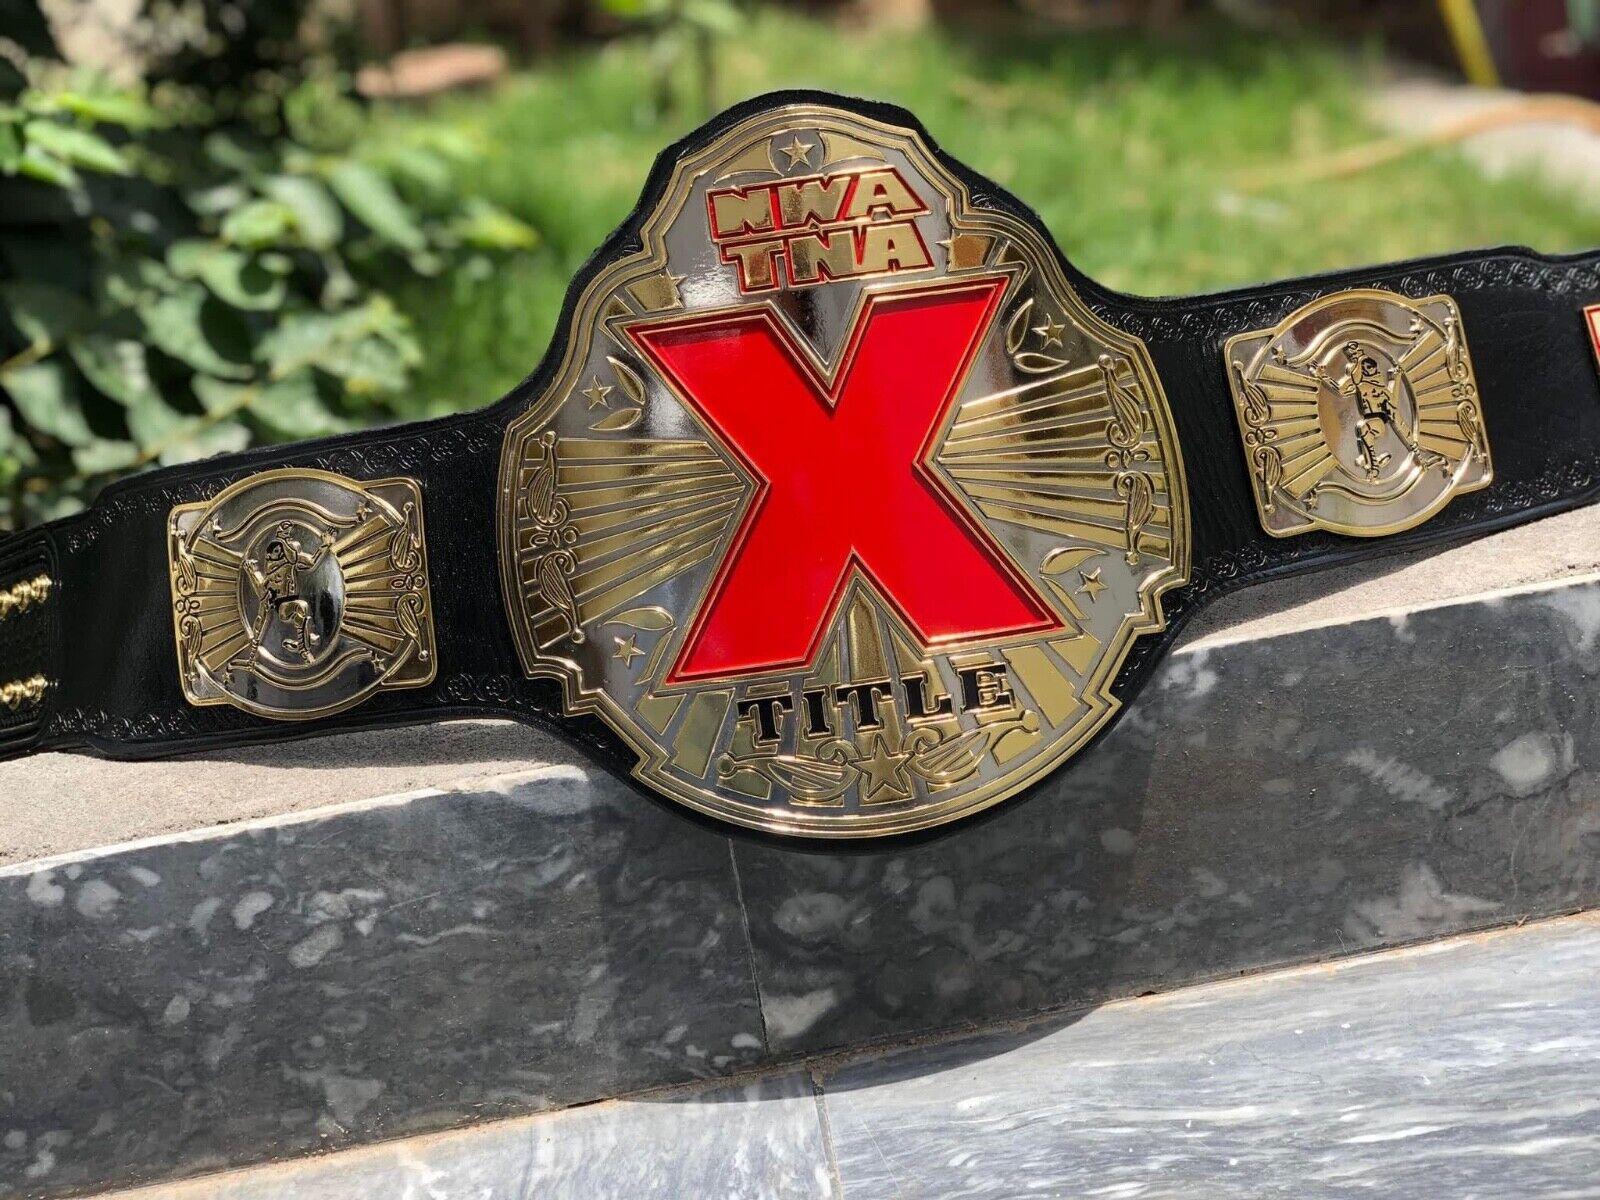 NWA TNA X CNC MADE CHAMPIONSHIP BELT